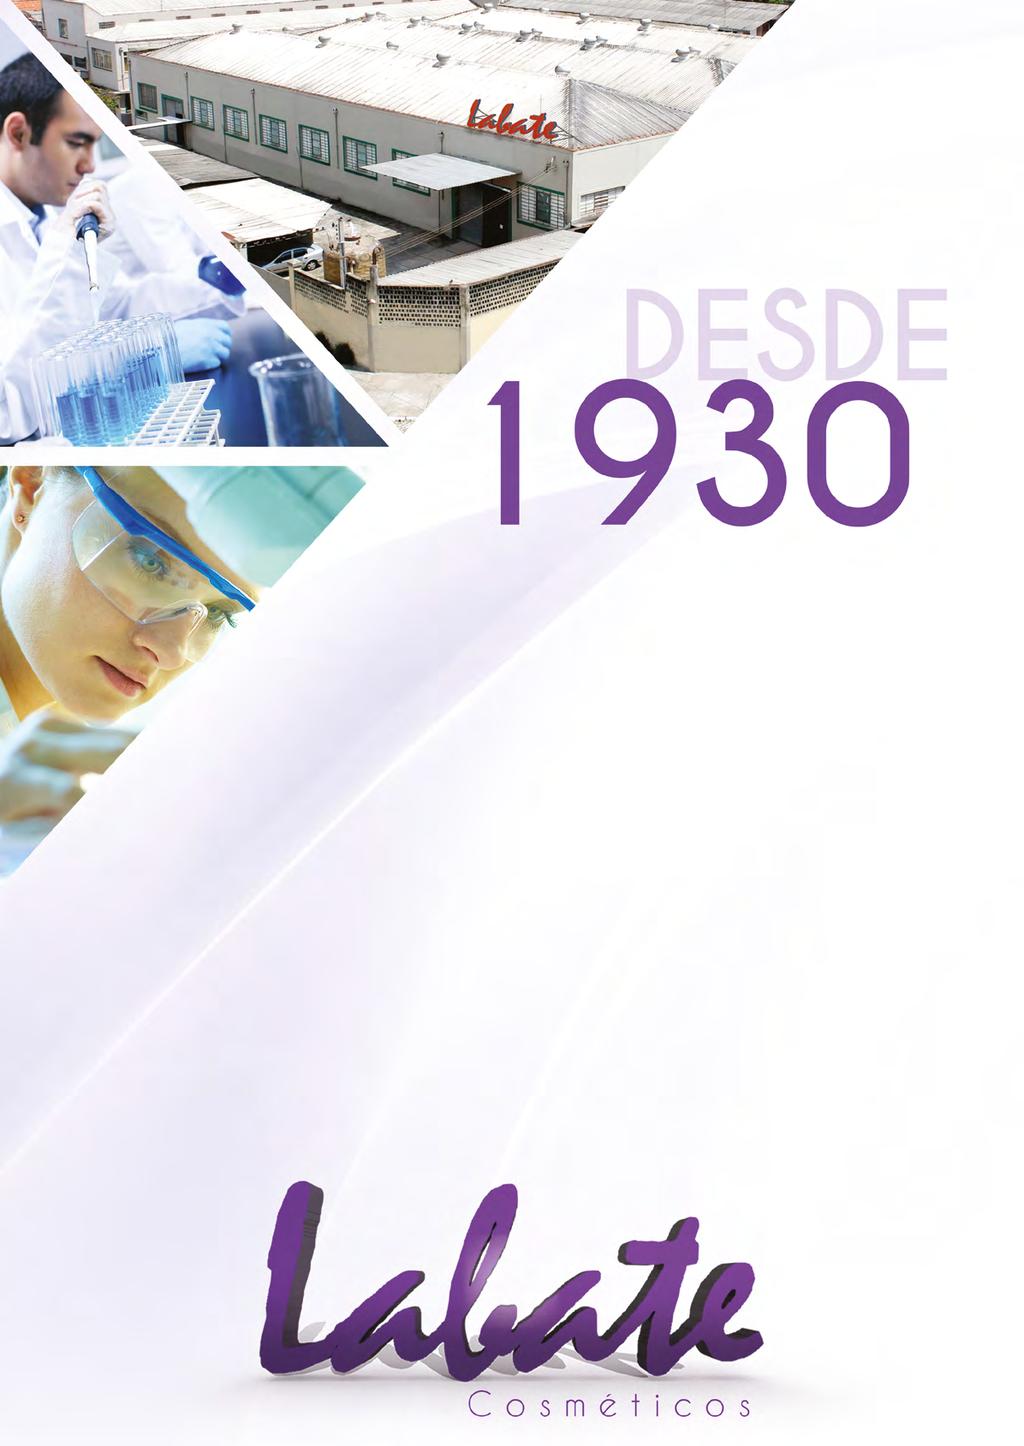 Em 1930, o jovem João Bruno Gasparotto fundava a empresa Gasparotto Labate e Cia LTDA, com o objetivo inovador de desenvolver produtos de higiene e beleza com qualidade a preços justos.